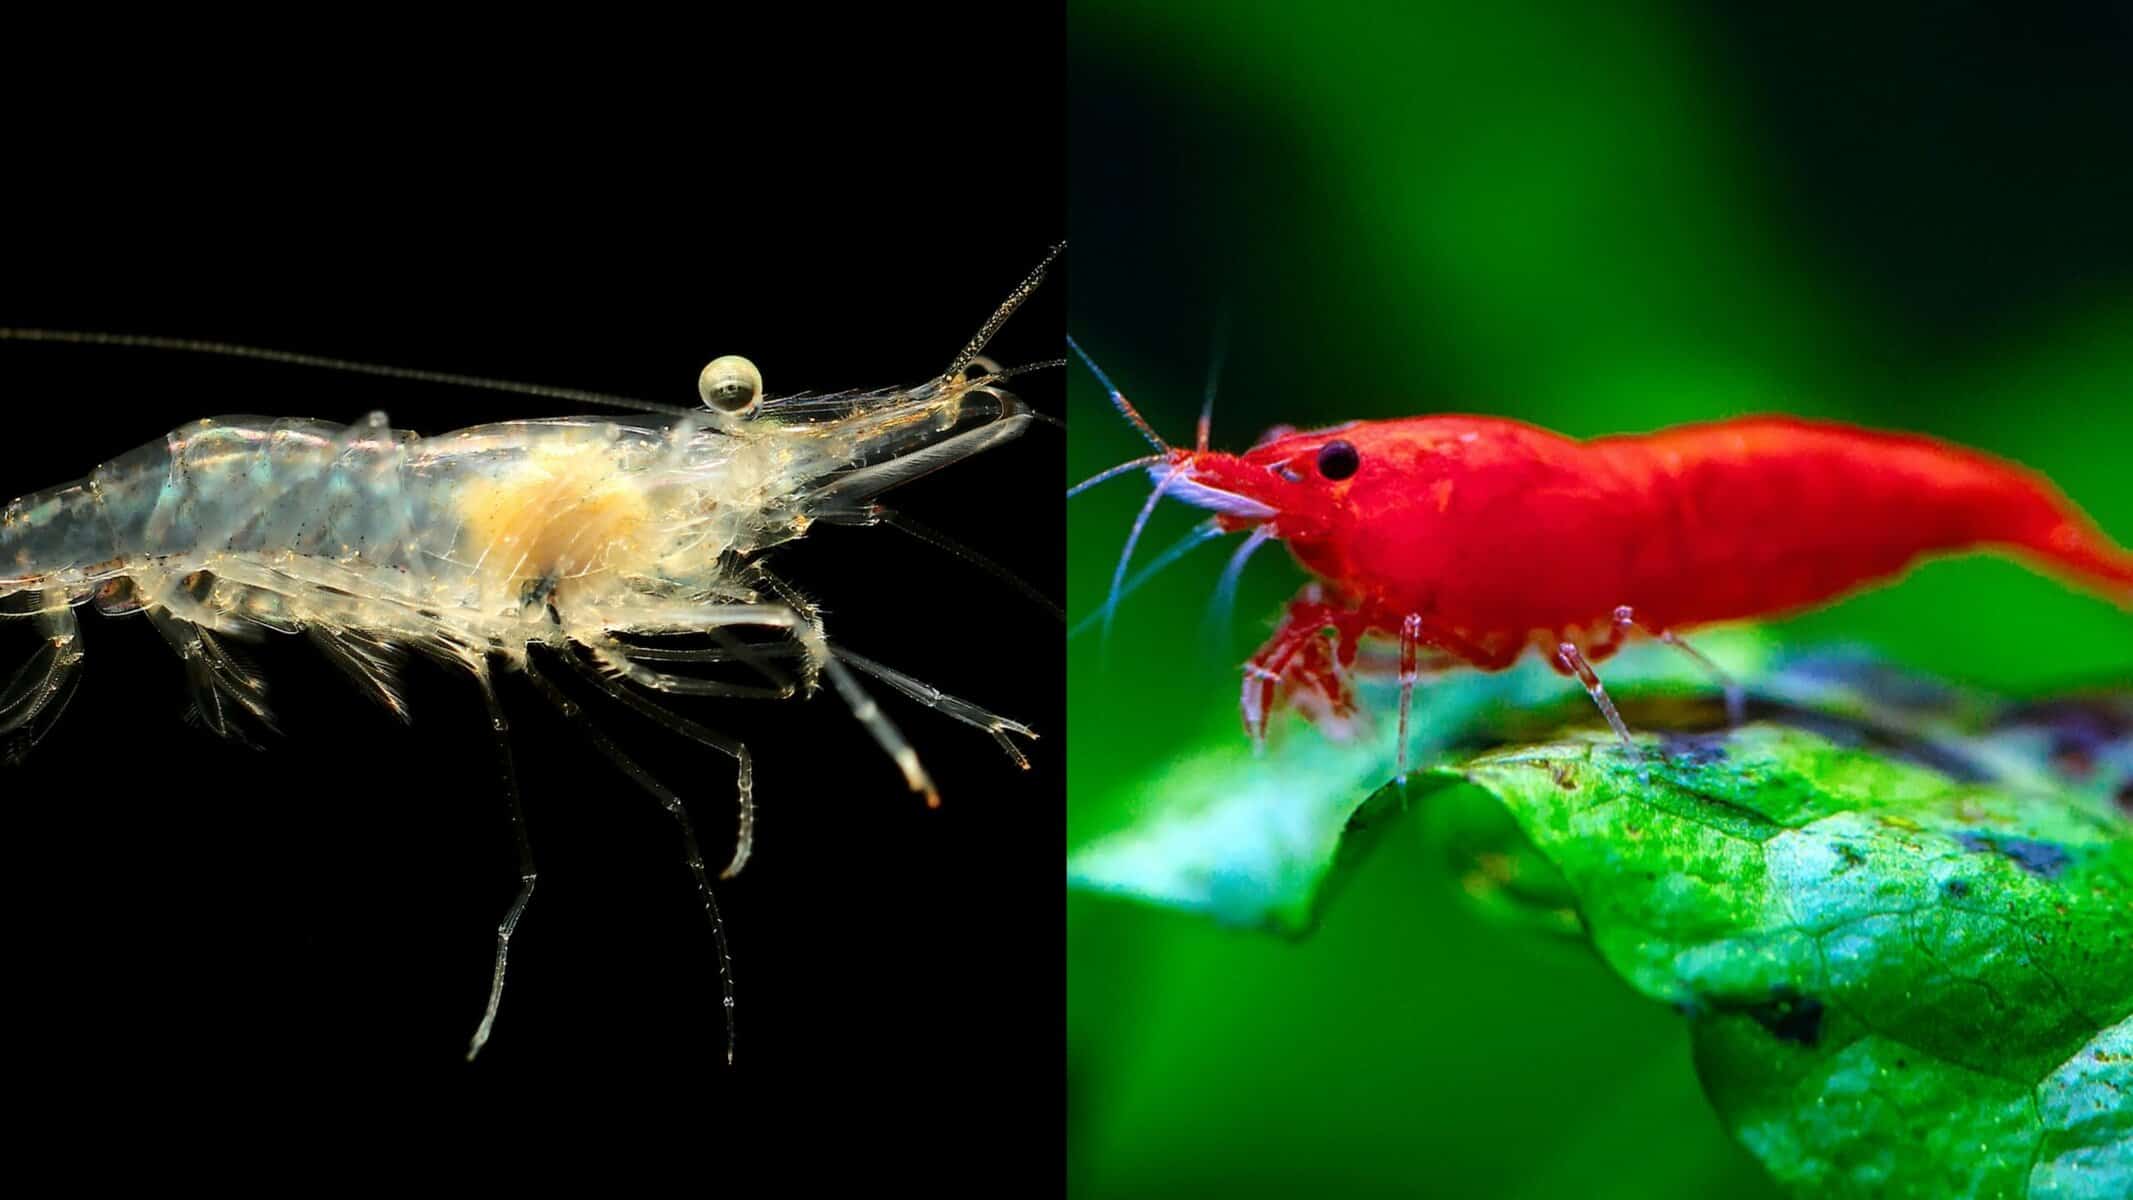 Ghost Shrimp vs Cherry Shrimp